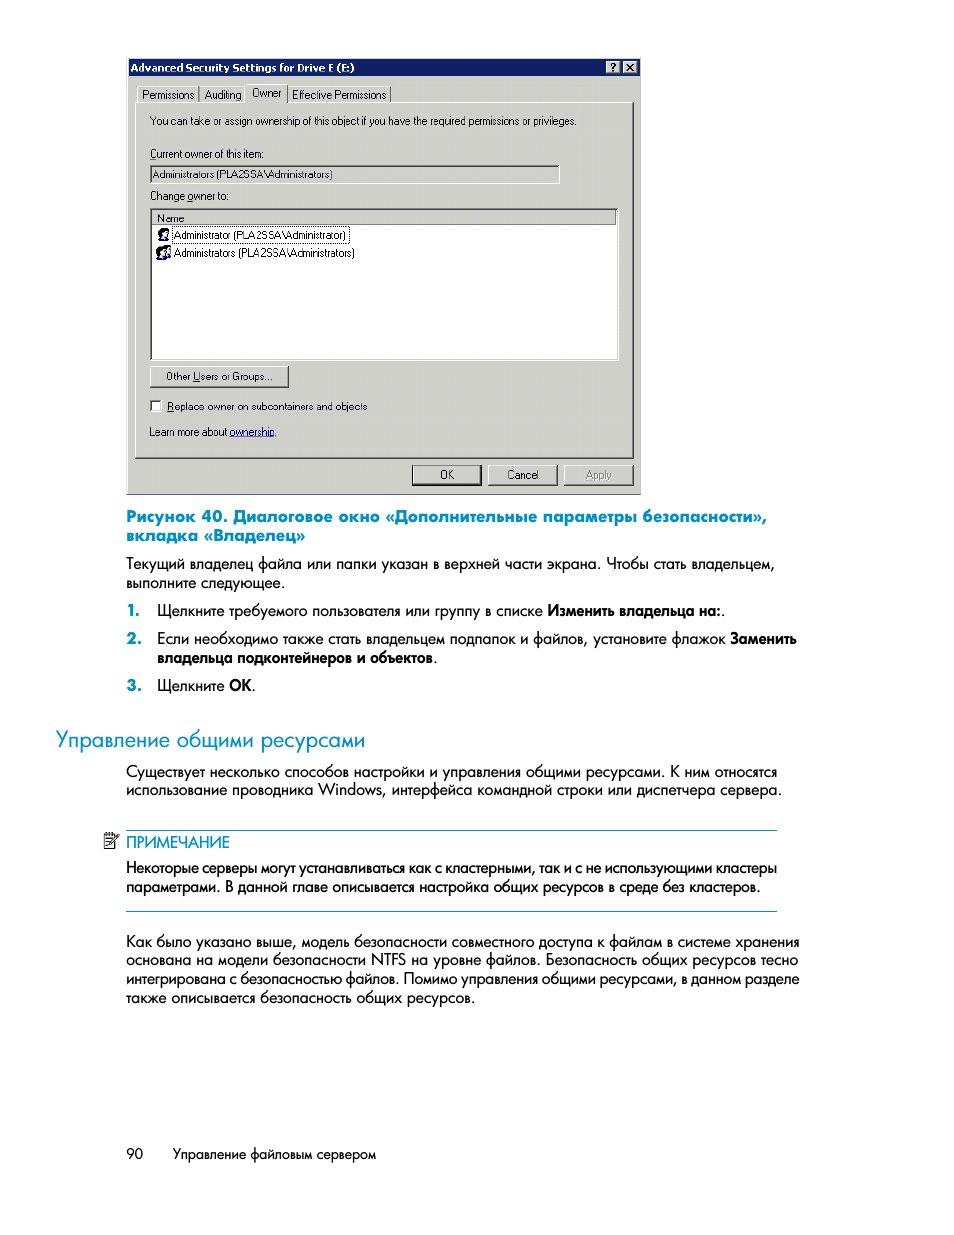 Управление общими ресурсами | Инструкция по эксплуатации HP Сетевые системы хранения HP StorageWorks X3000 | Страница 90 / 156